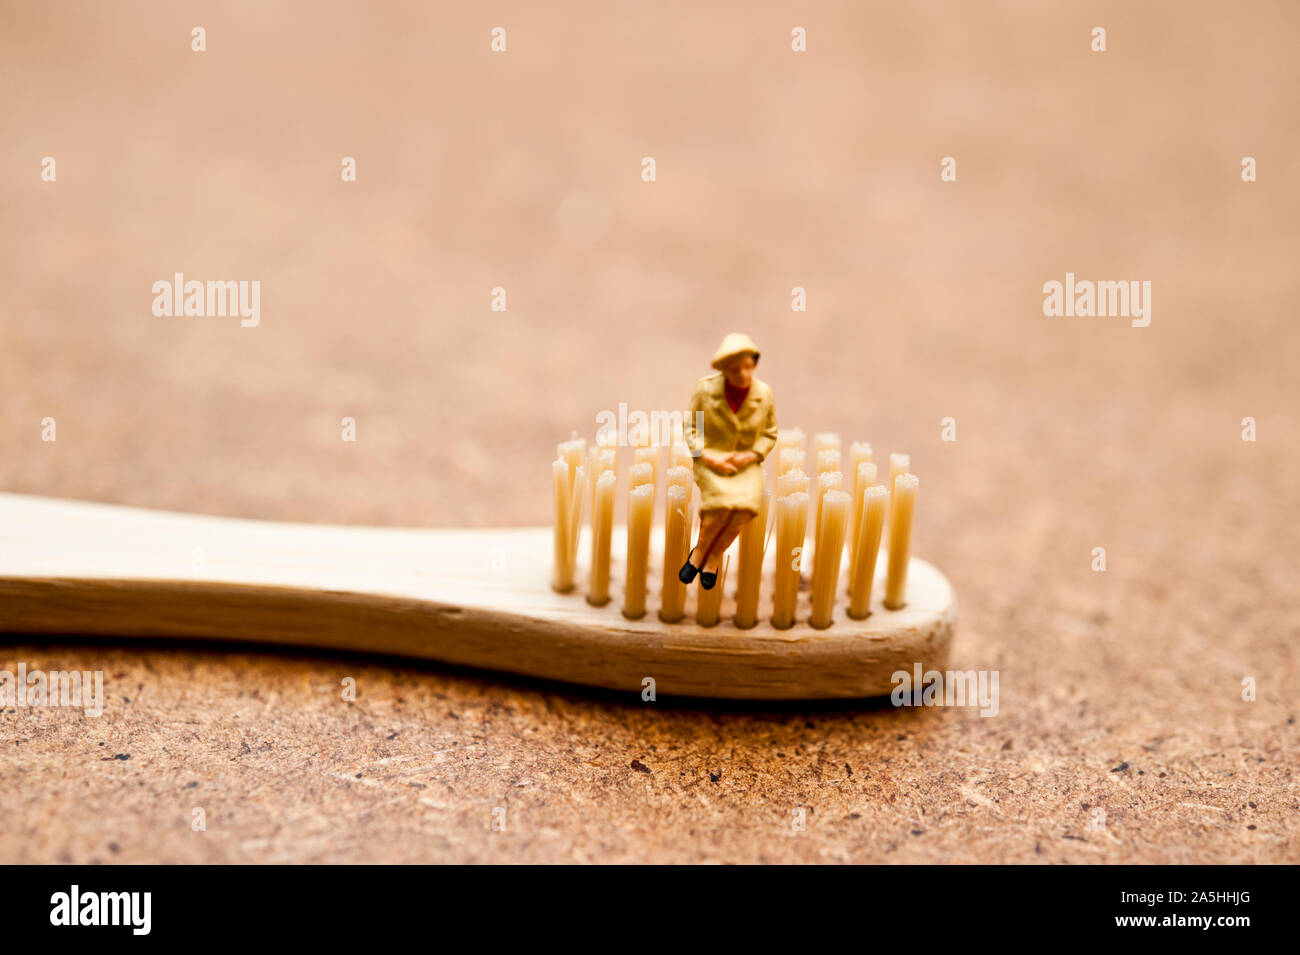 Figurillas en miniatura sentado en un cepillo de dientes de bambú - concepto de consumidor consciente ecológico Foto de stock